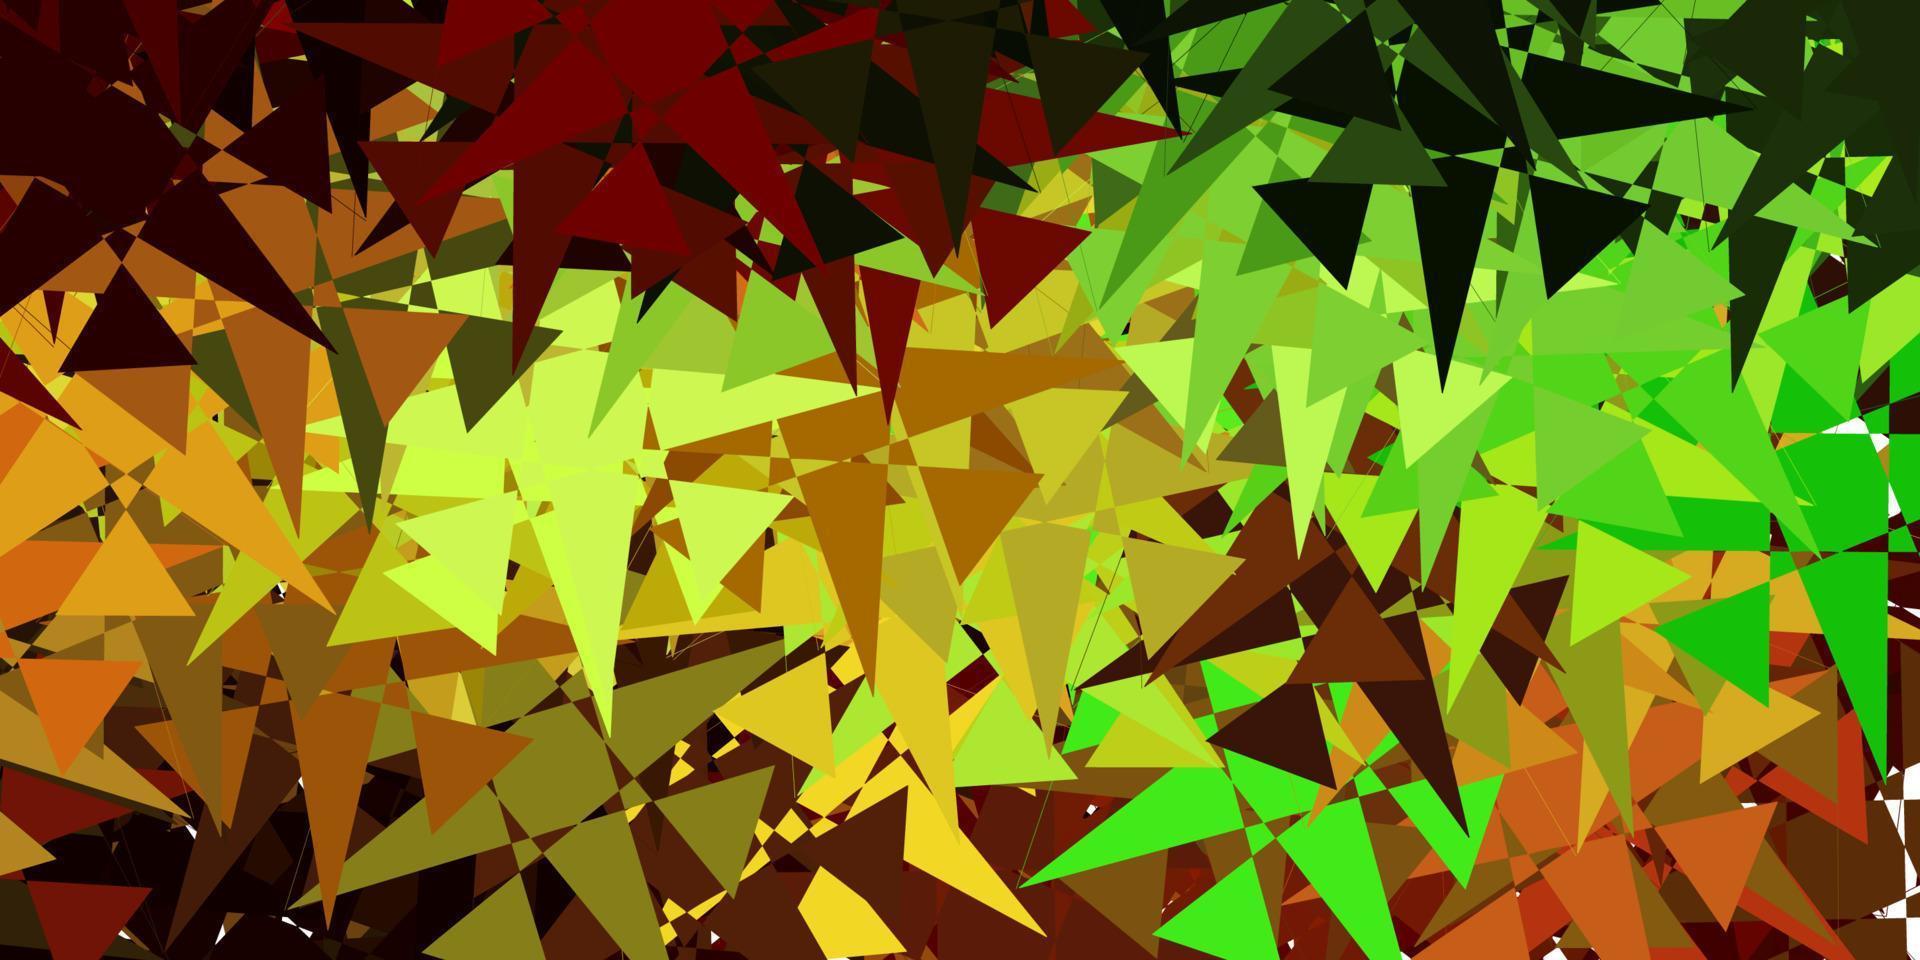 ljusgrön, gul vektorbakgrund med slumpmässiga former. vektor